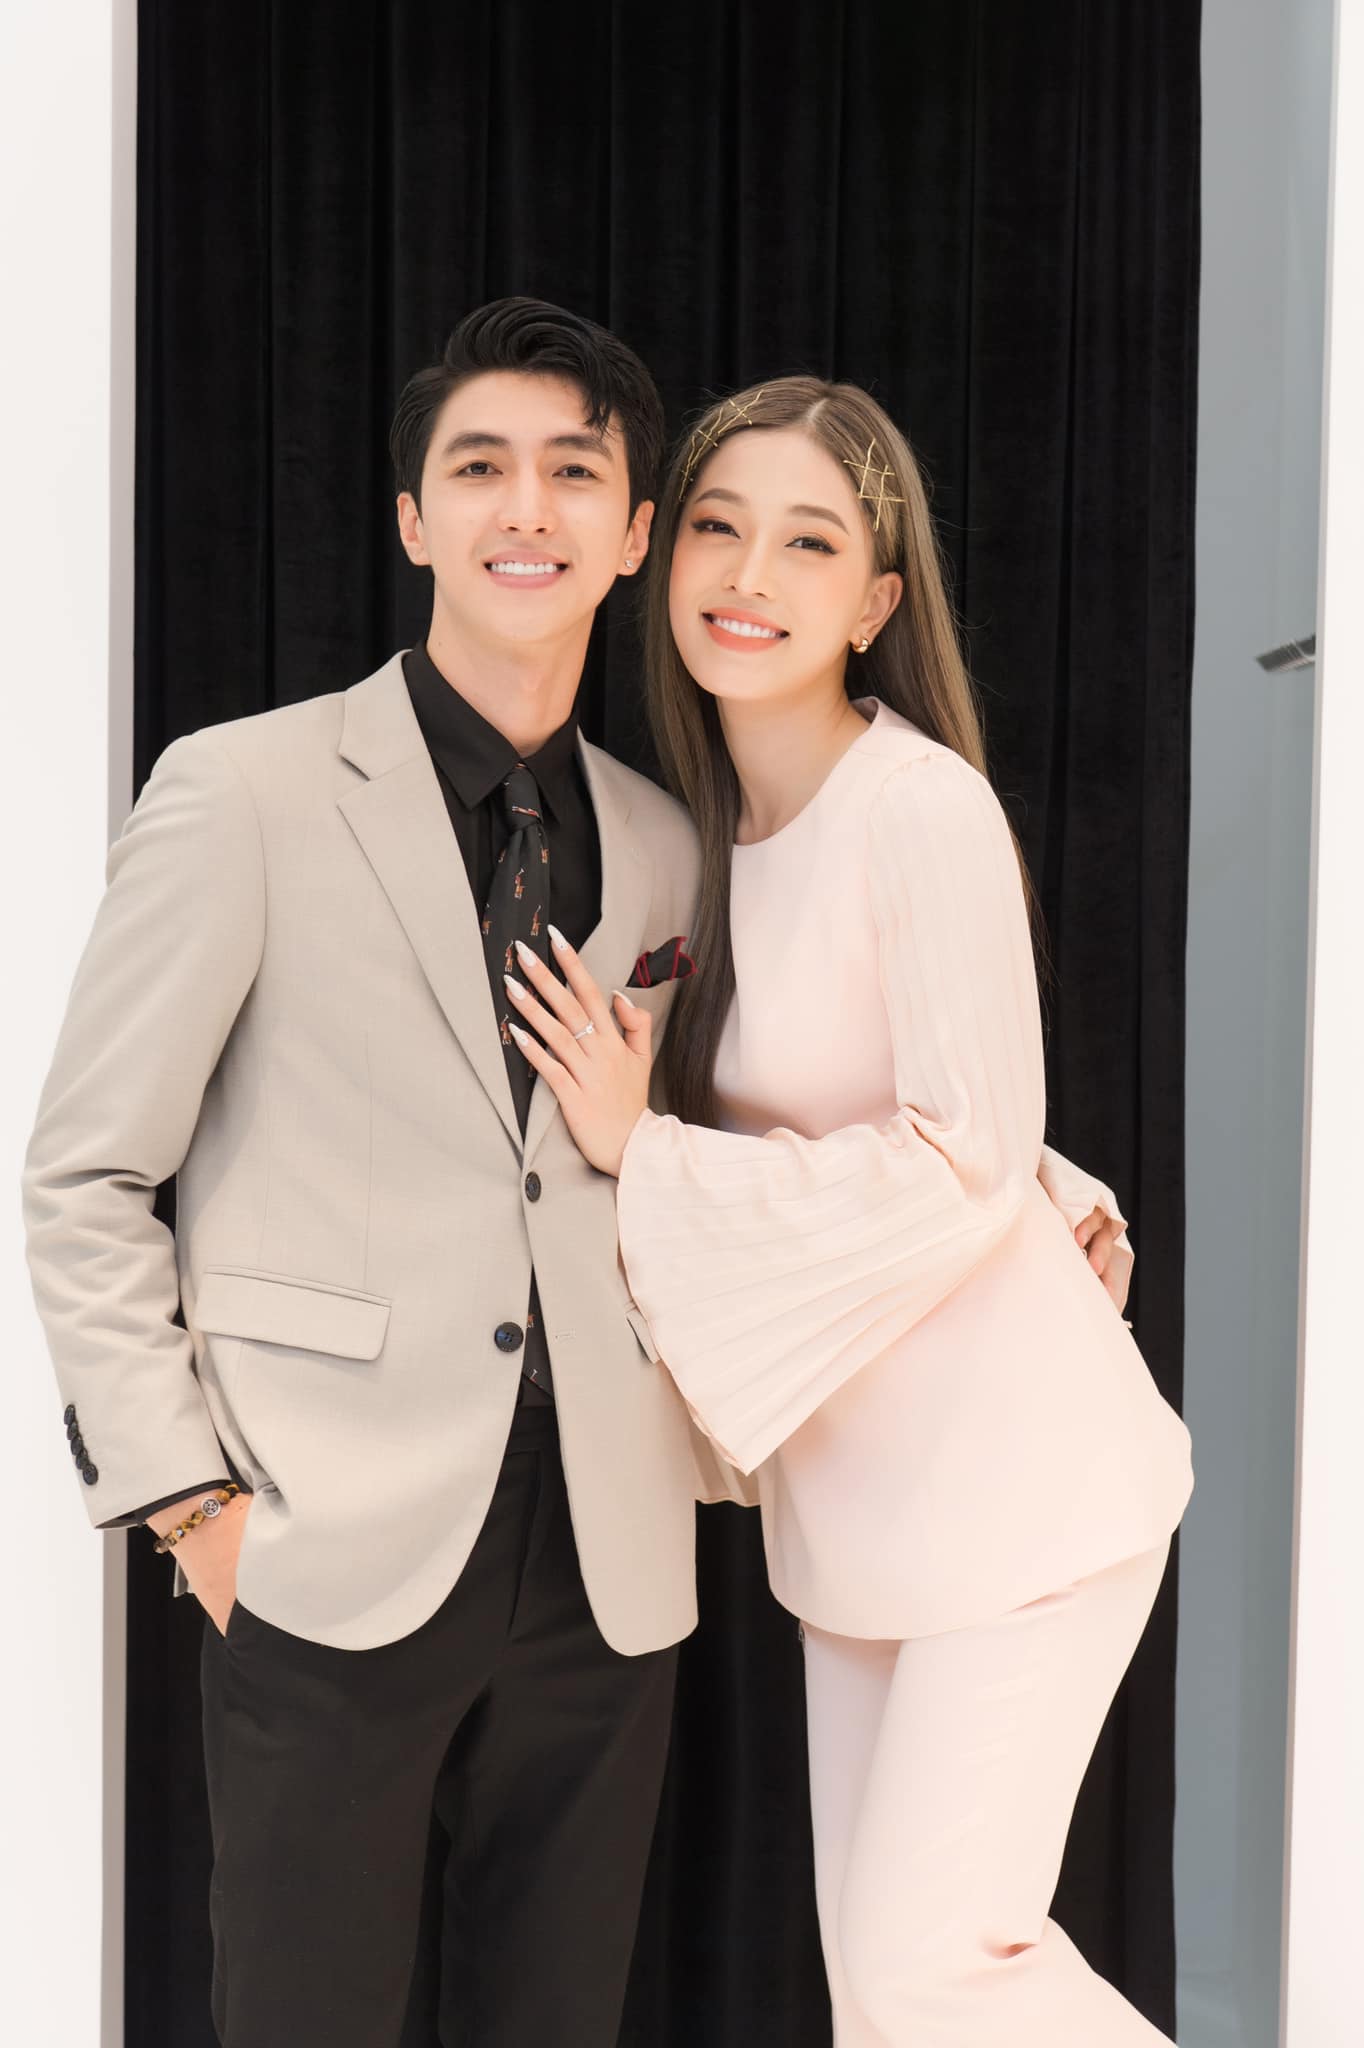 2 đám cưới được mong chờ bậc nhất showbiz Việt trong tháng 10 - ảnh 2